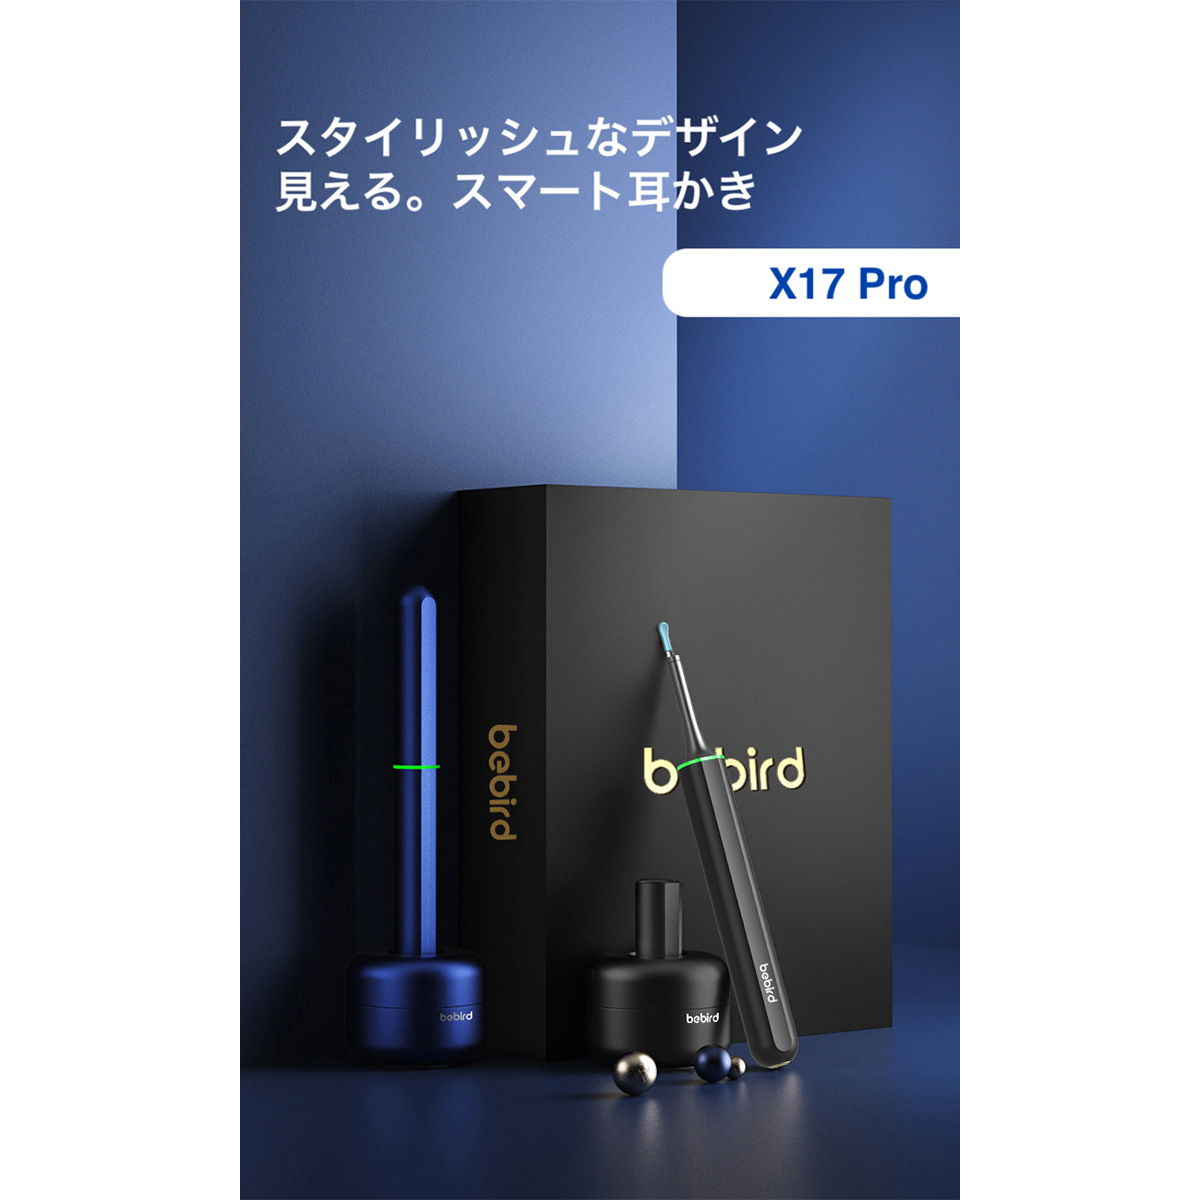 【在庫品/即納】bebird スマート耳かき X17 Pro ブルー